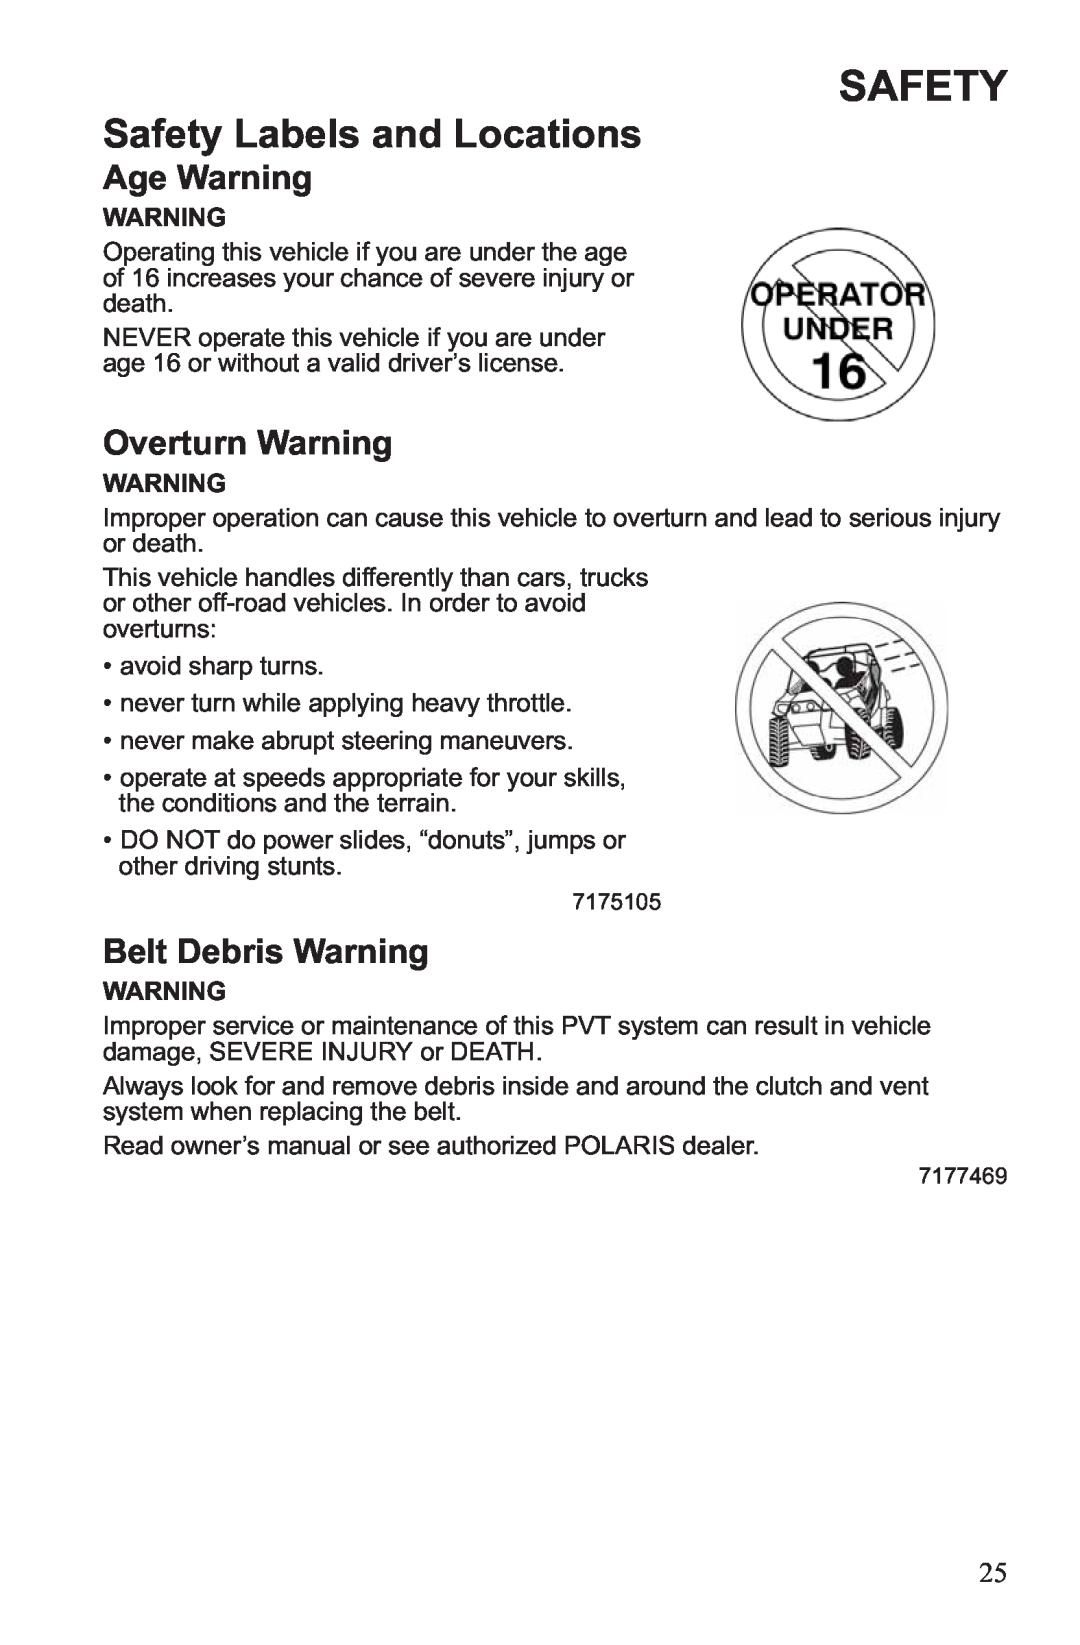 Polaris RZR XP 900, RZR XP 4 900 owner manual Safety, Age Warning, Overturn Warning, Belt Debris Warning 